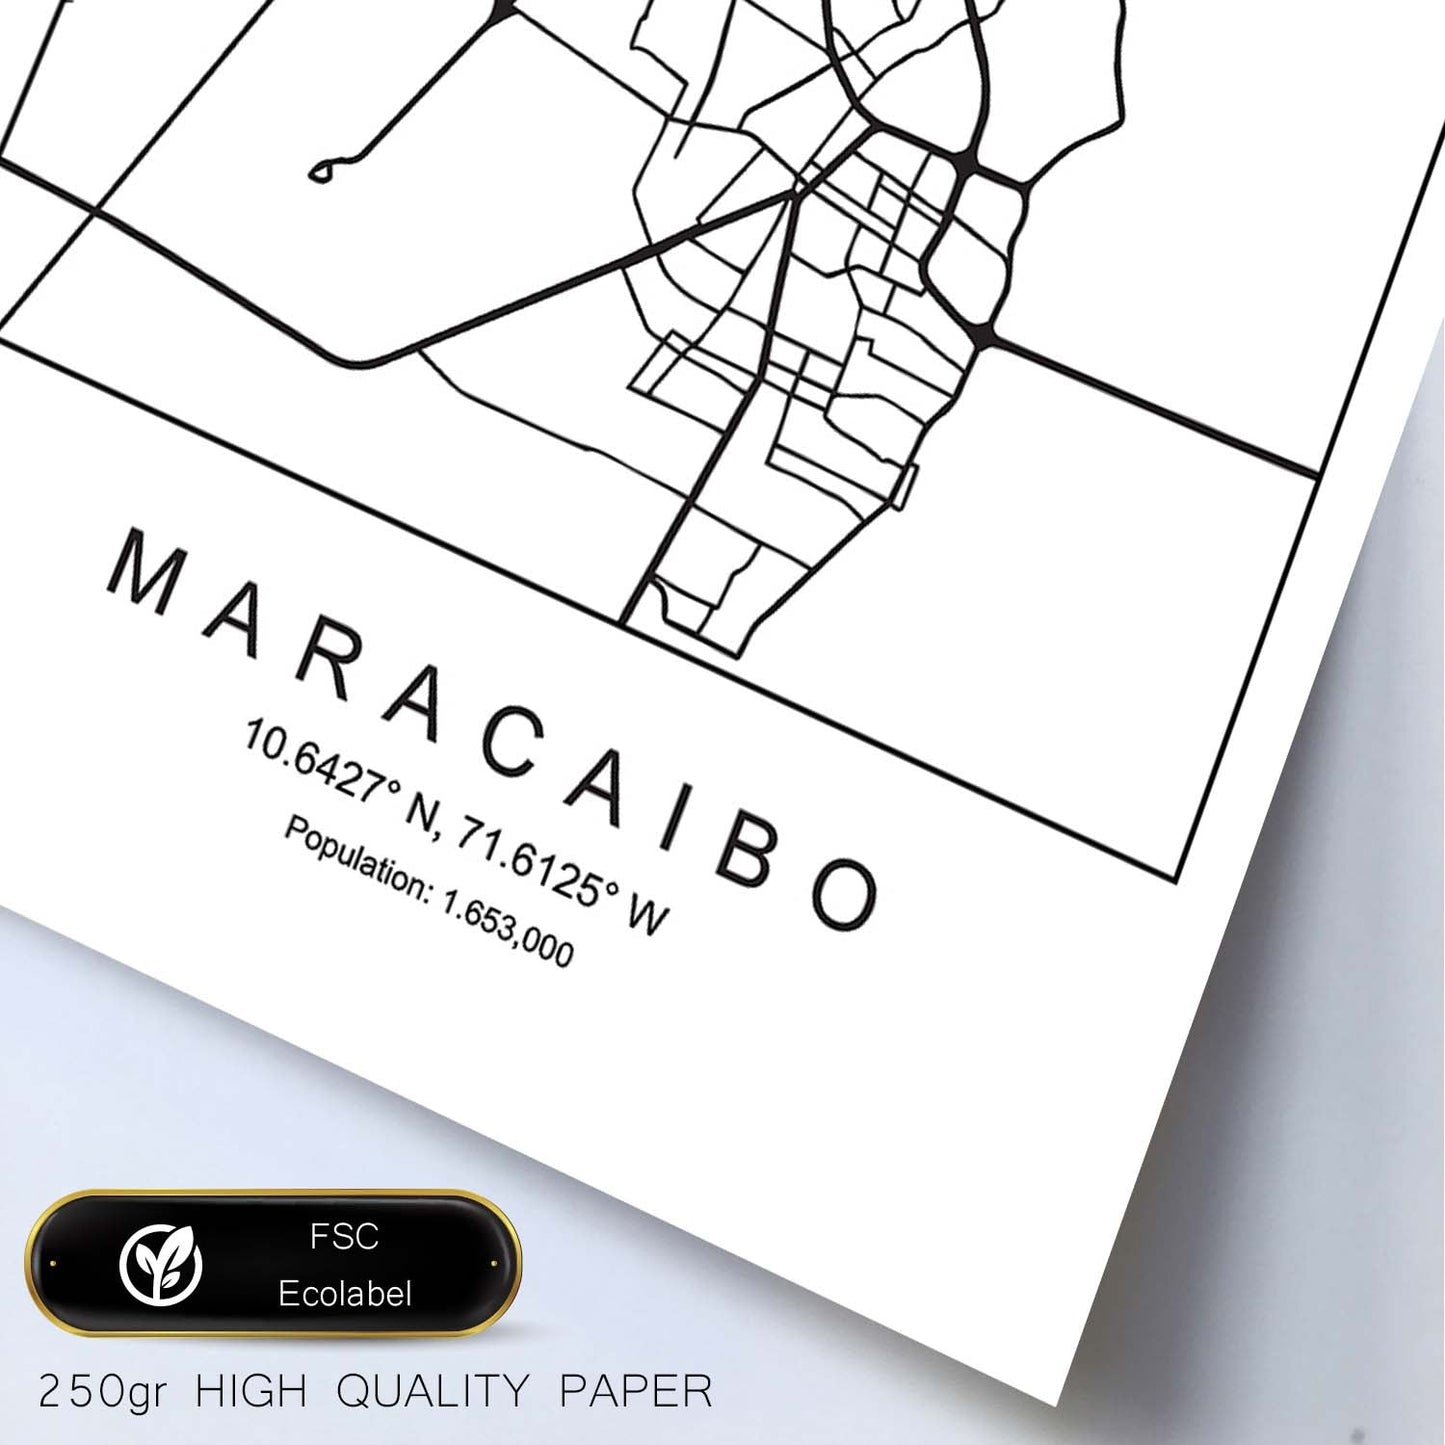 Lámina mapa de la ciudad Maracaibo estilo nordico en blanco y negro.-Artwork-Nacnic-Nacnic Estudio SL